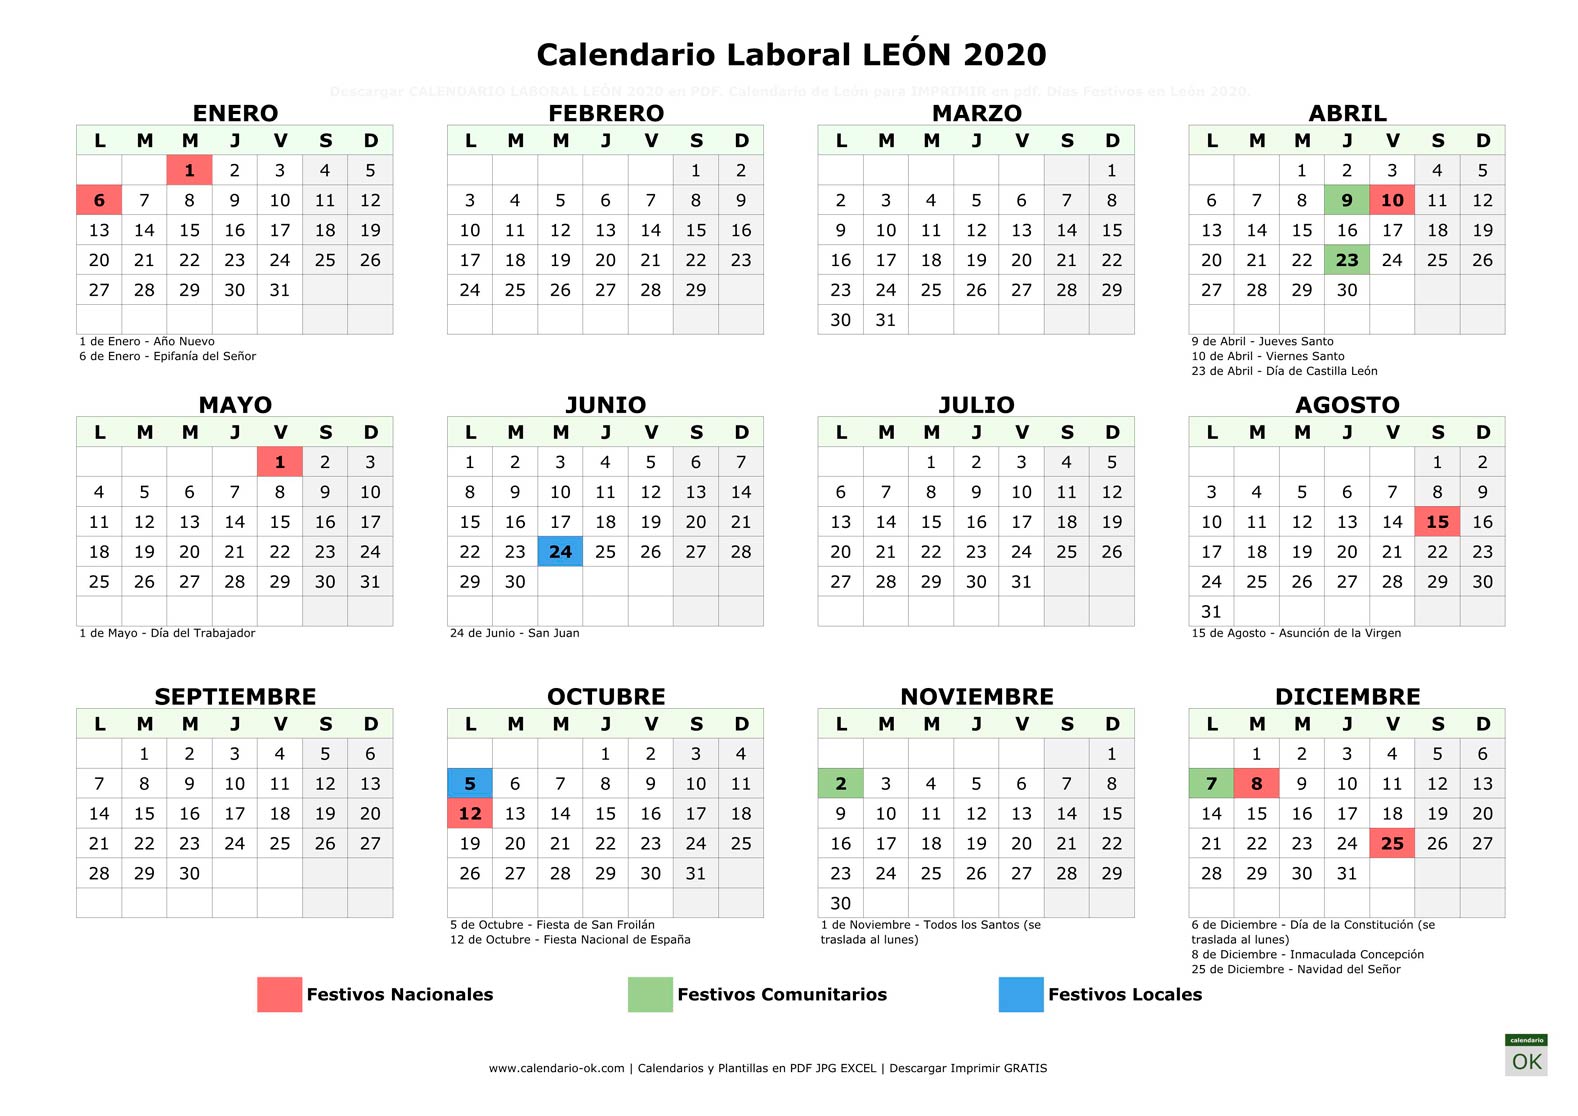 Calendario Laboral LEÓN 2020 horizontal